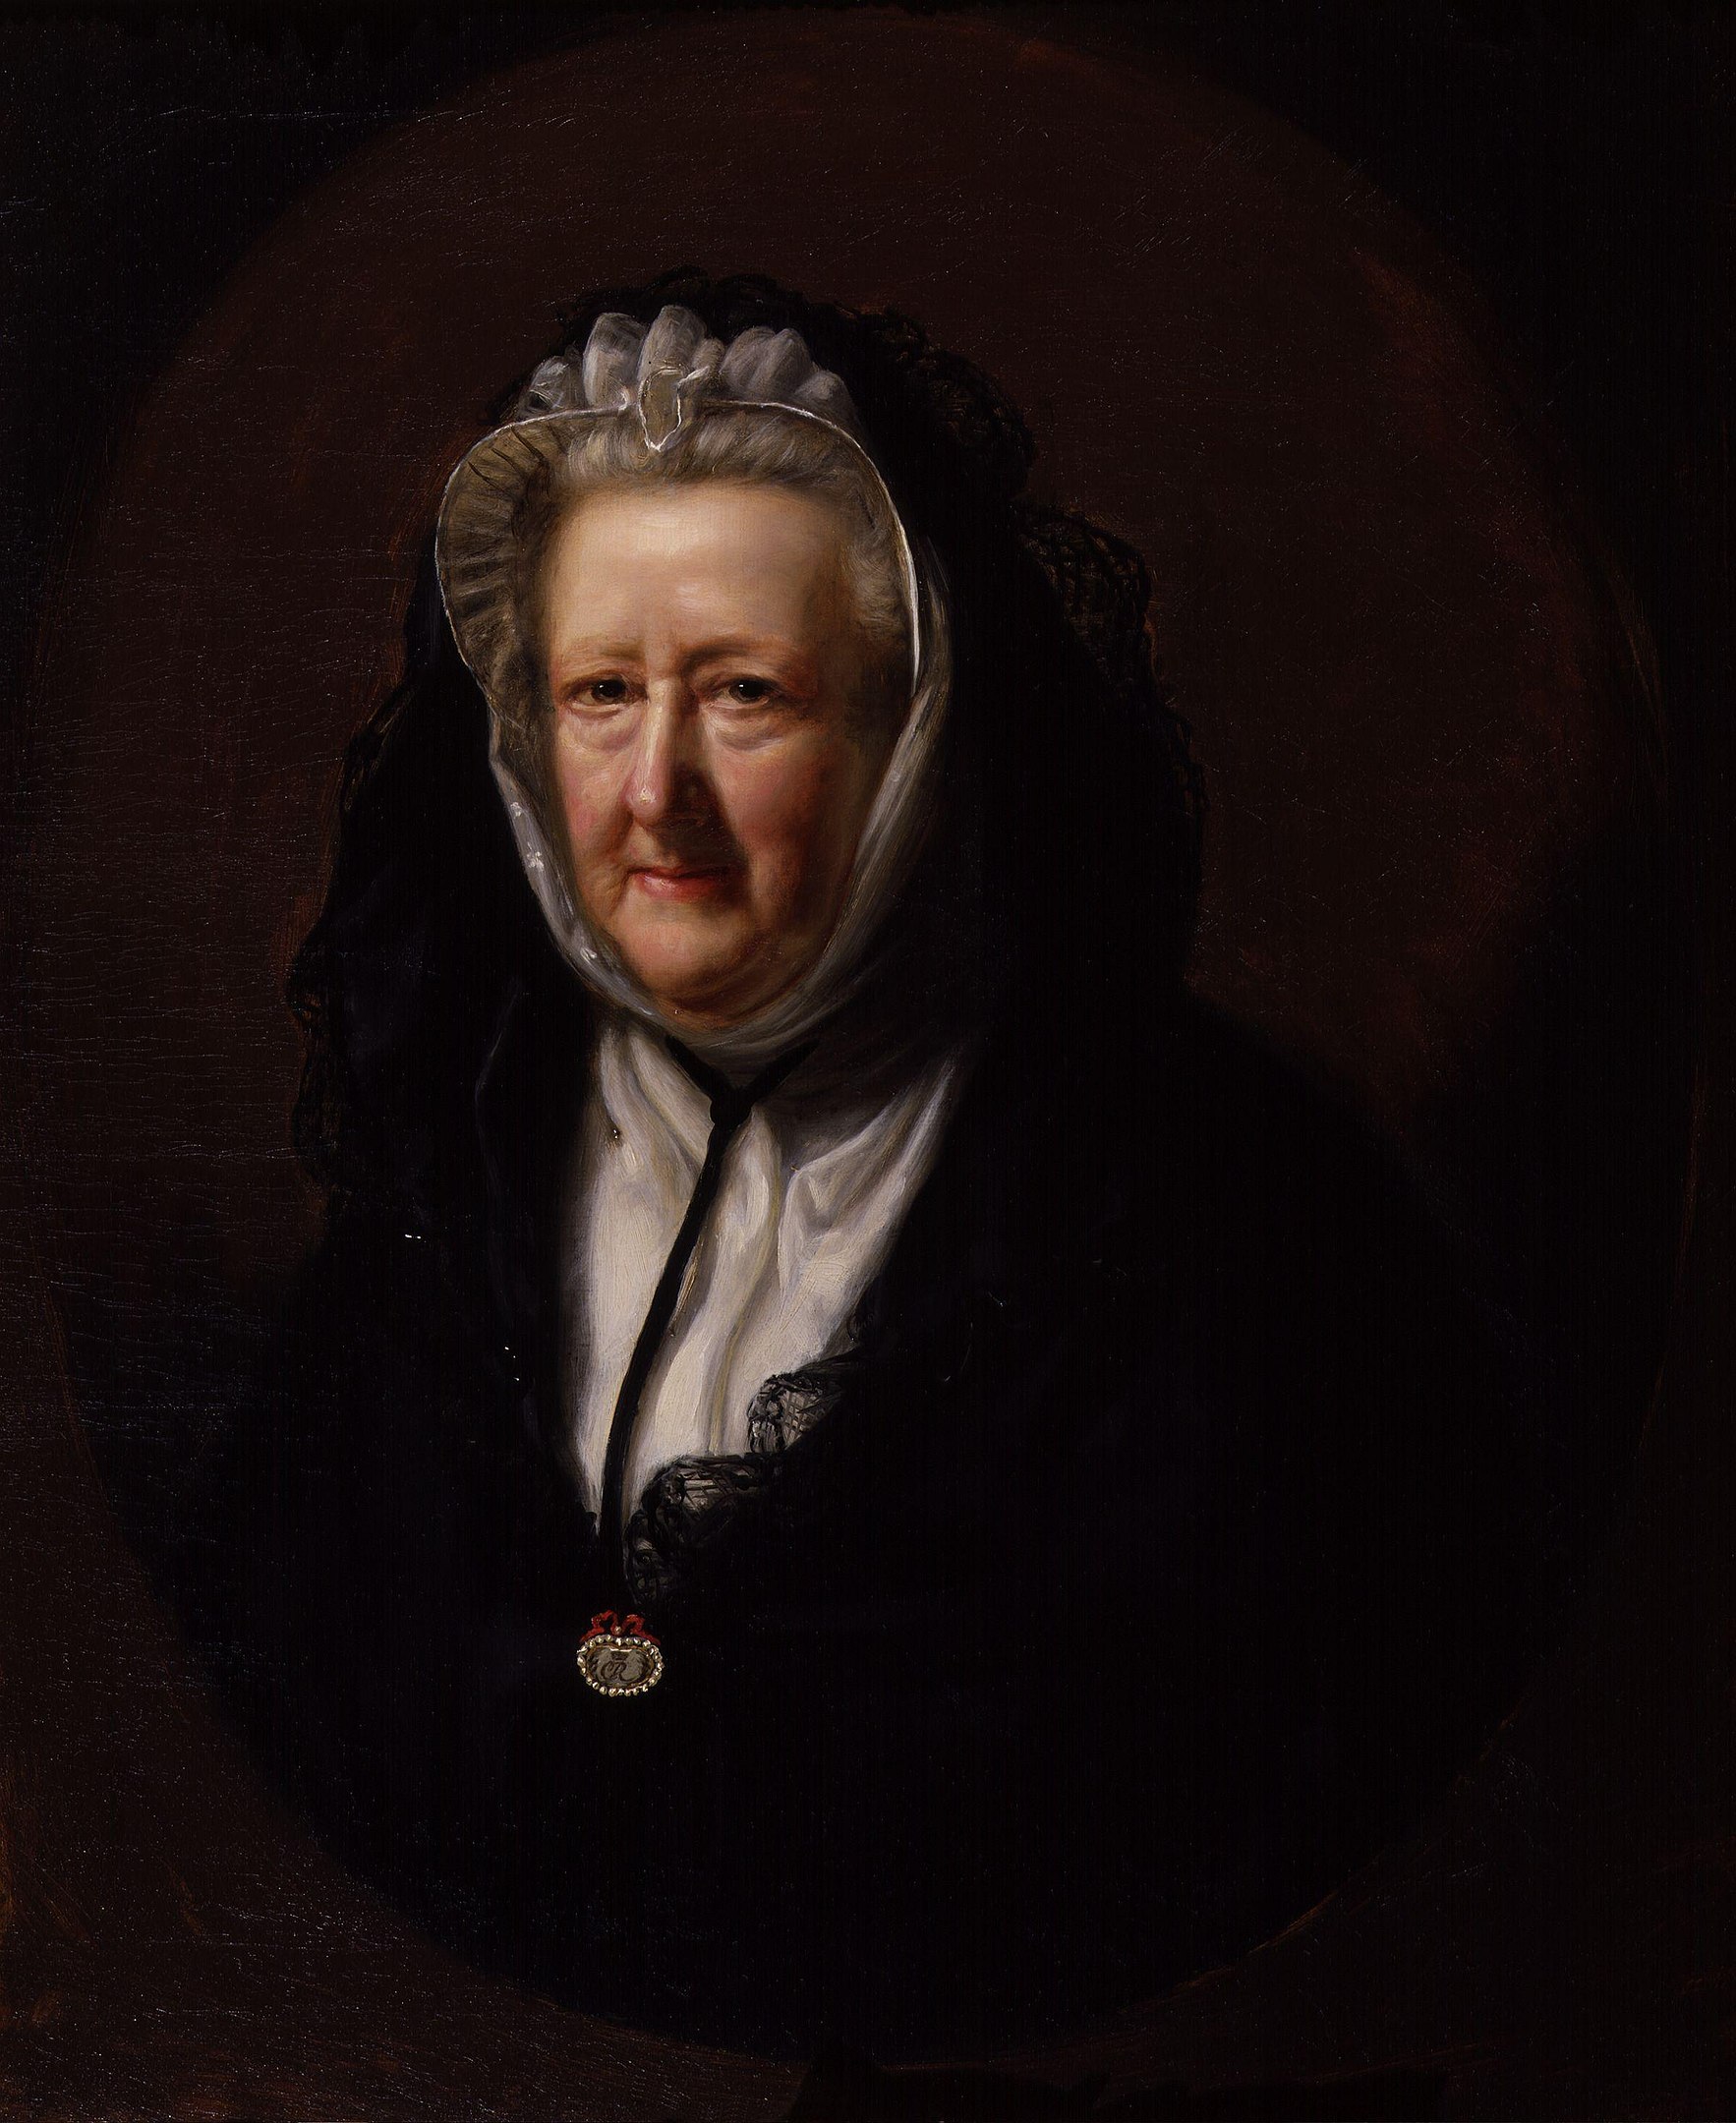 Μαίρη Ντελάνι (Ντιλέινι) - 14 Μαΐου 1700 - 15 Απριλίου 1788